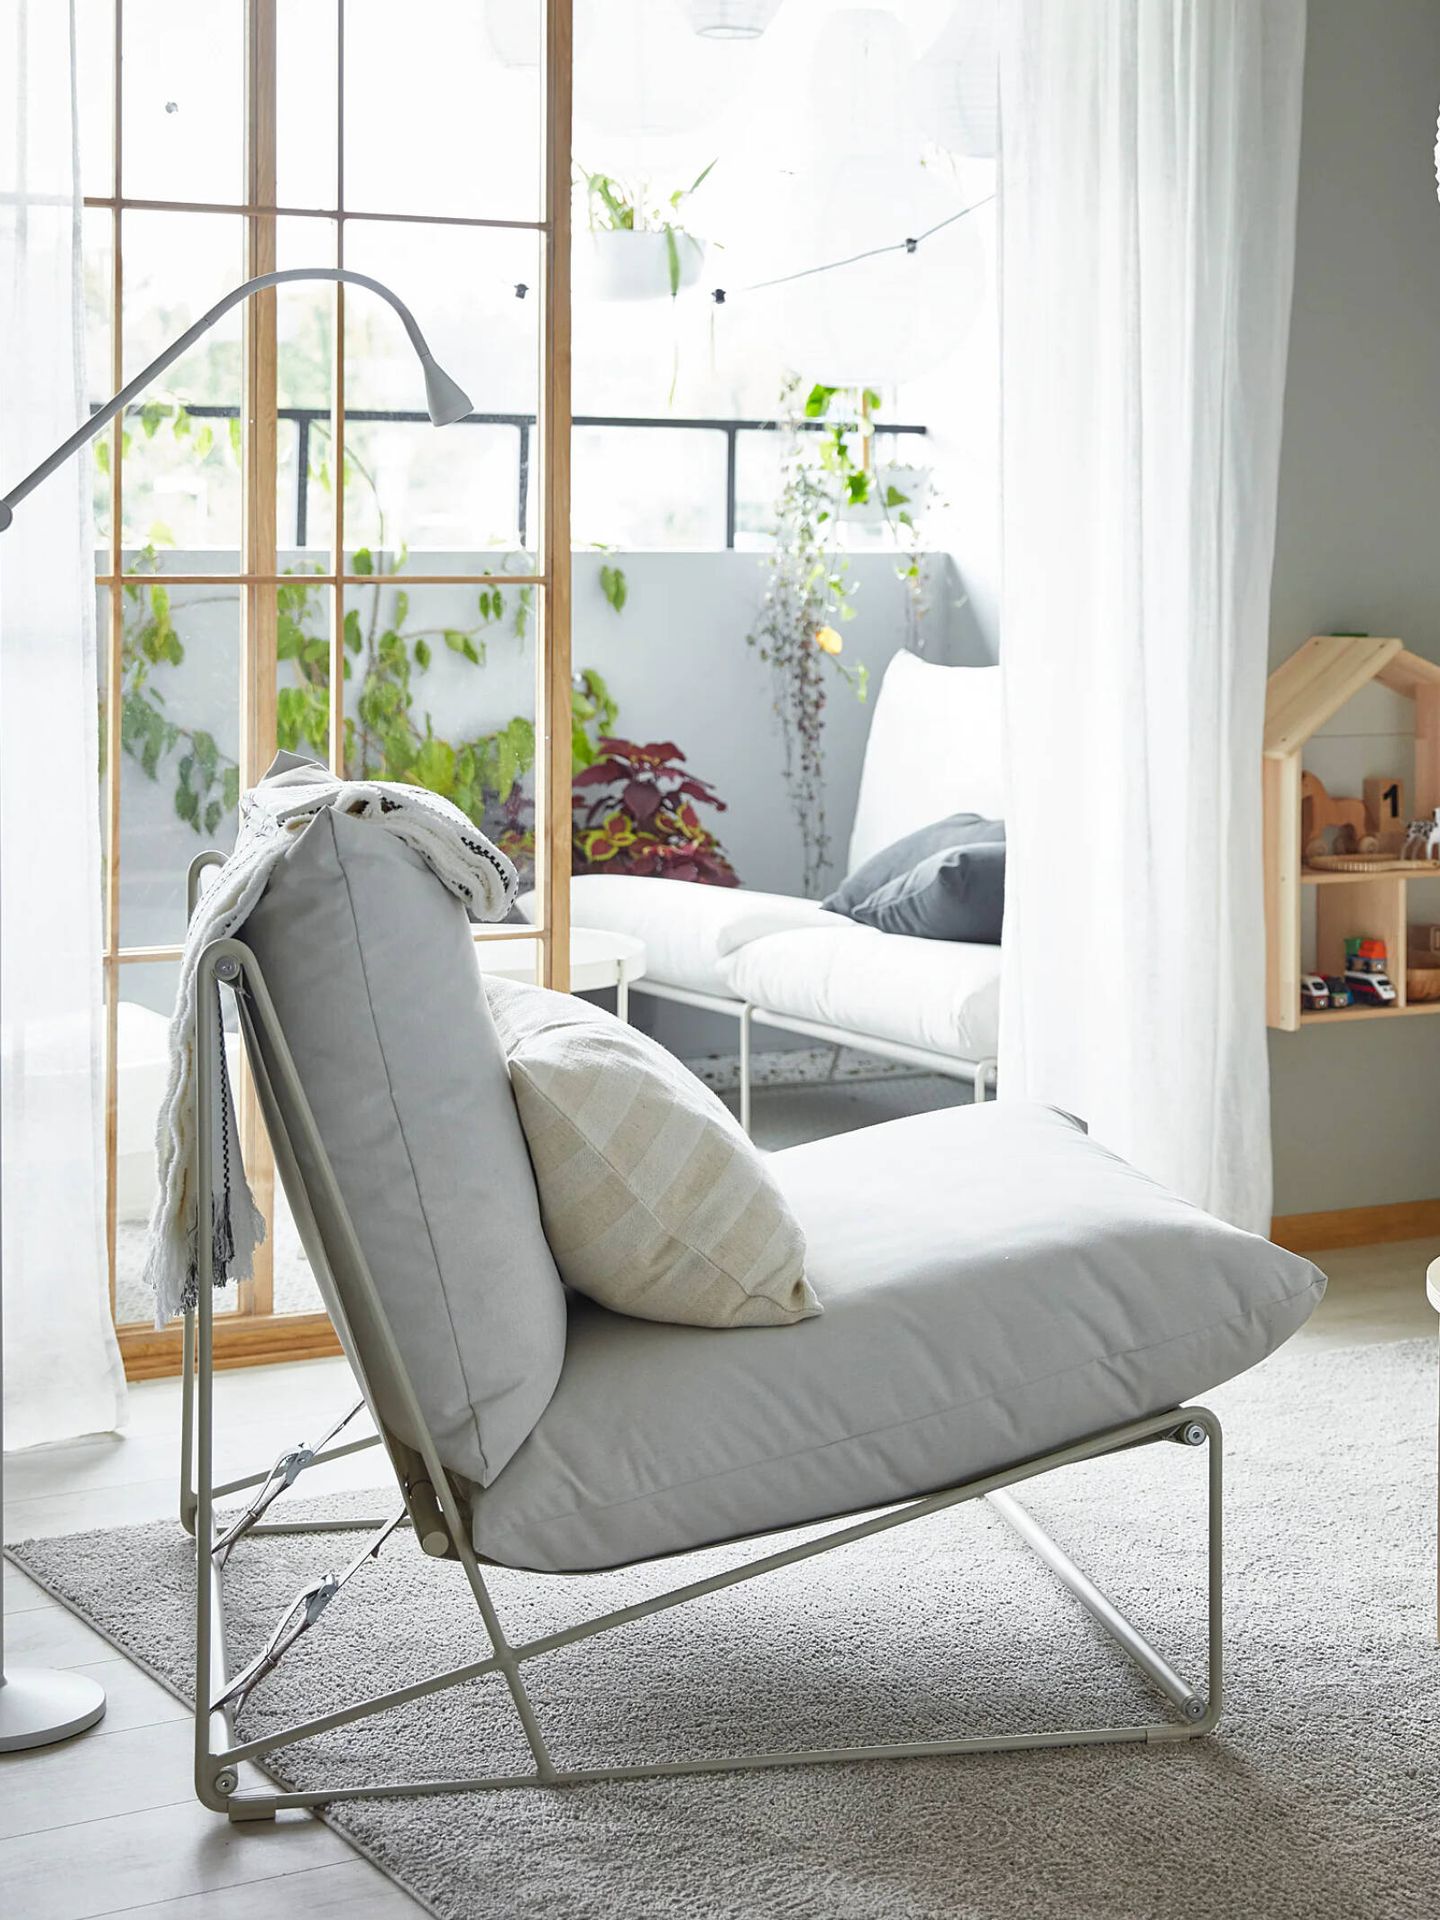 El sillón para exterior de Ikea. (Cortesía)